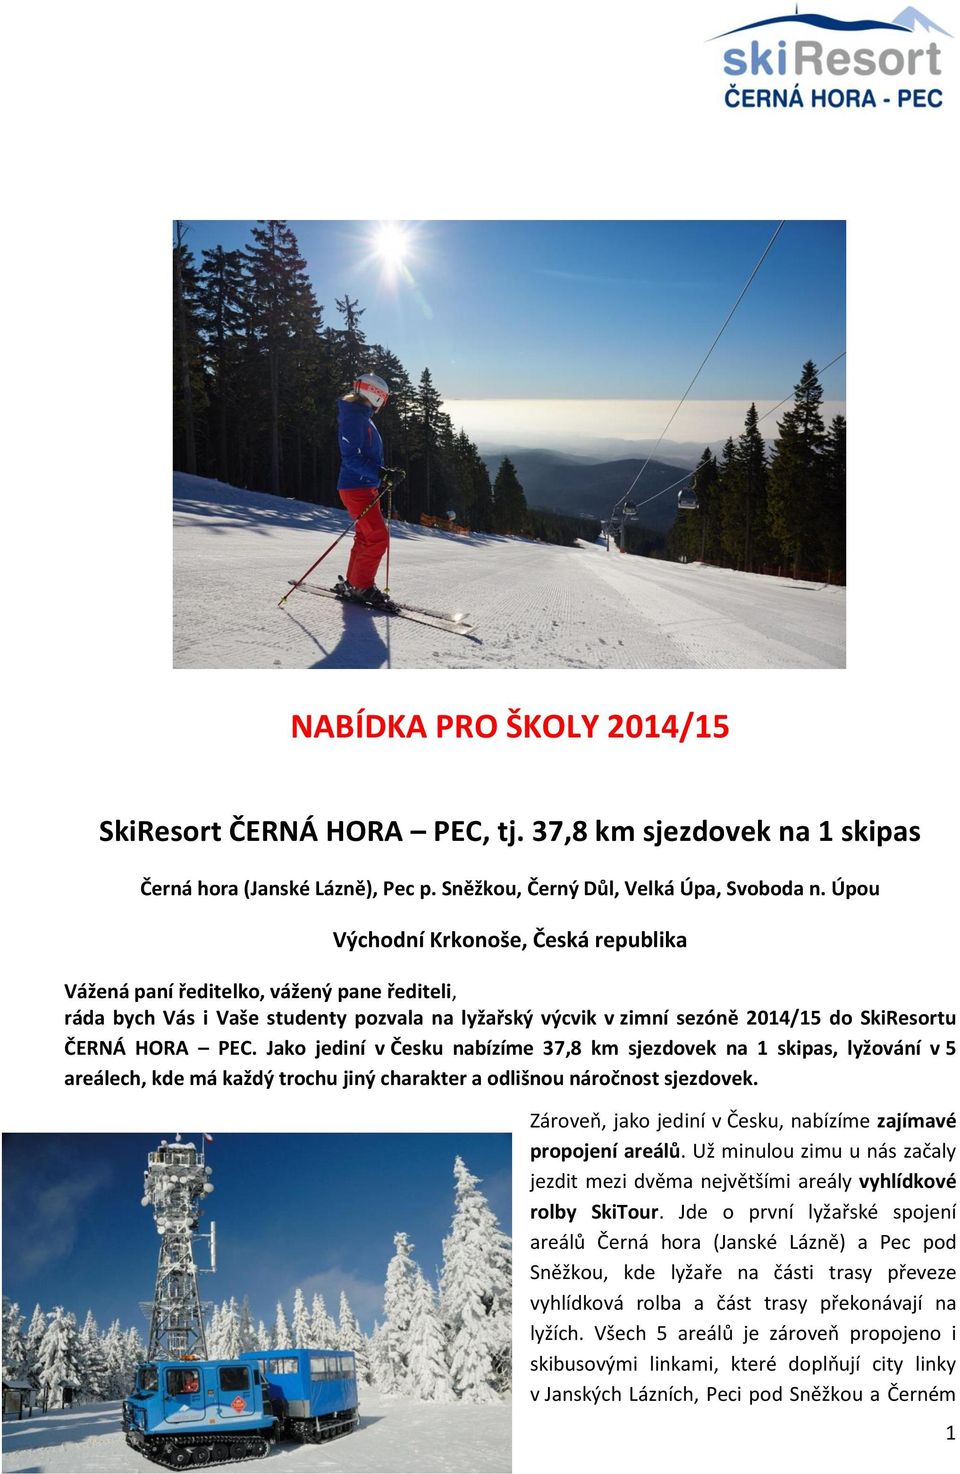 Jako jediní v Česku nabízíme 37,8 km sjezdovek na 1 skipas, lyžování v 5 areálech, kde má každý trochu jiný charakter a odlišnou náročnost sjezdovek.